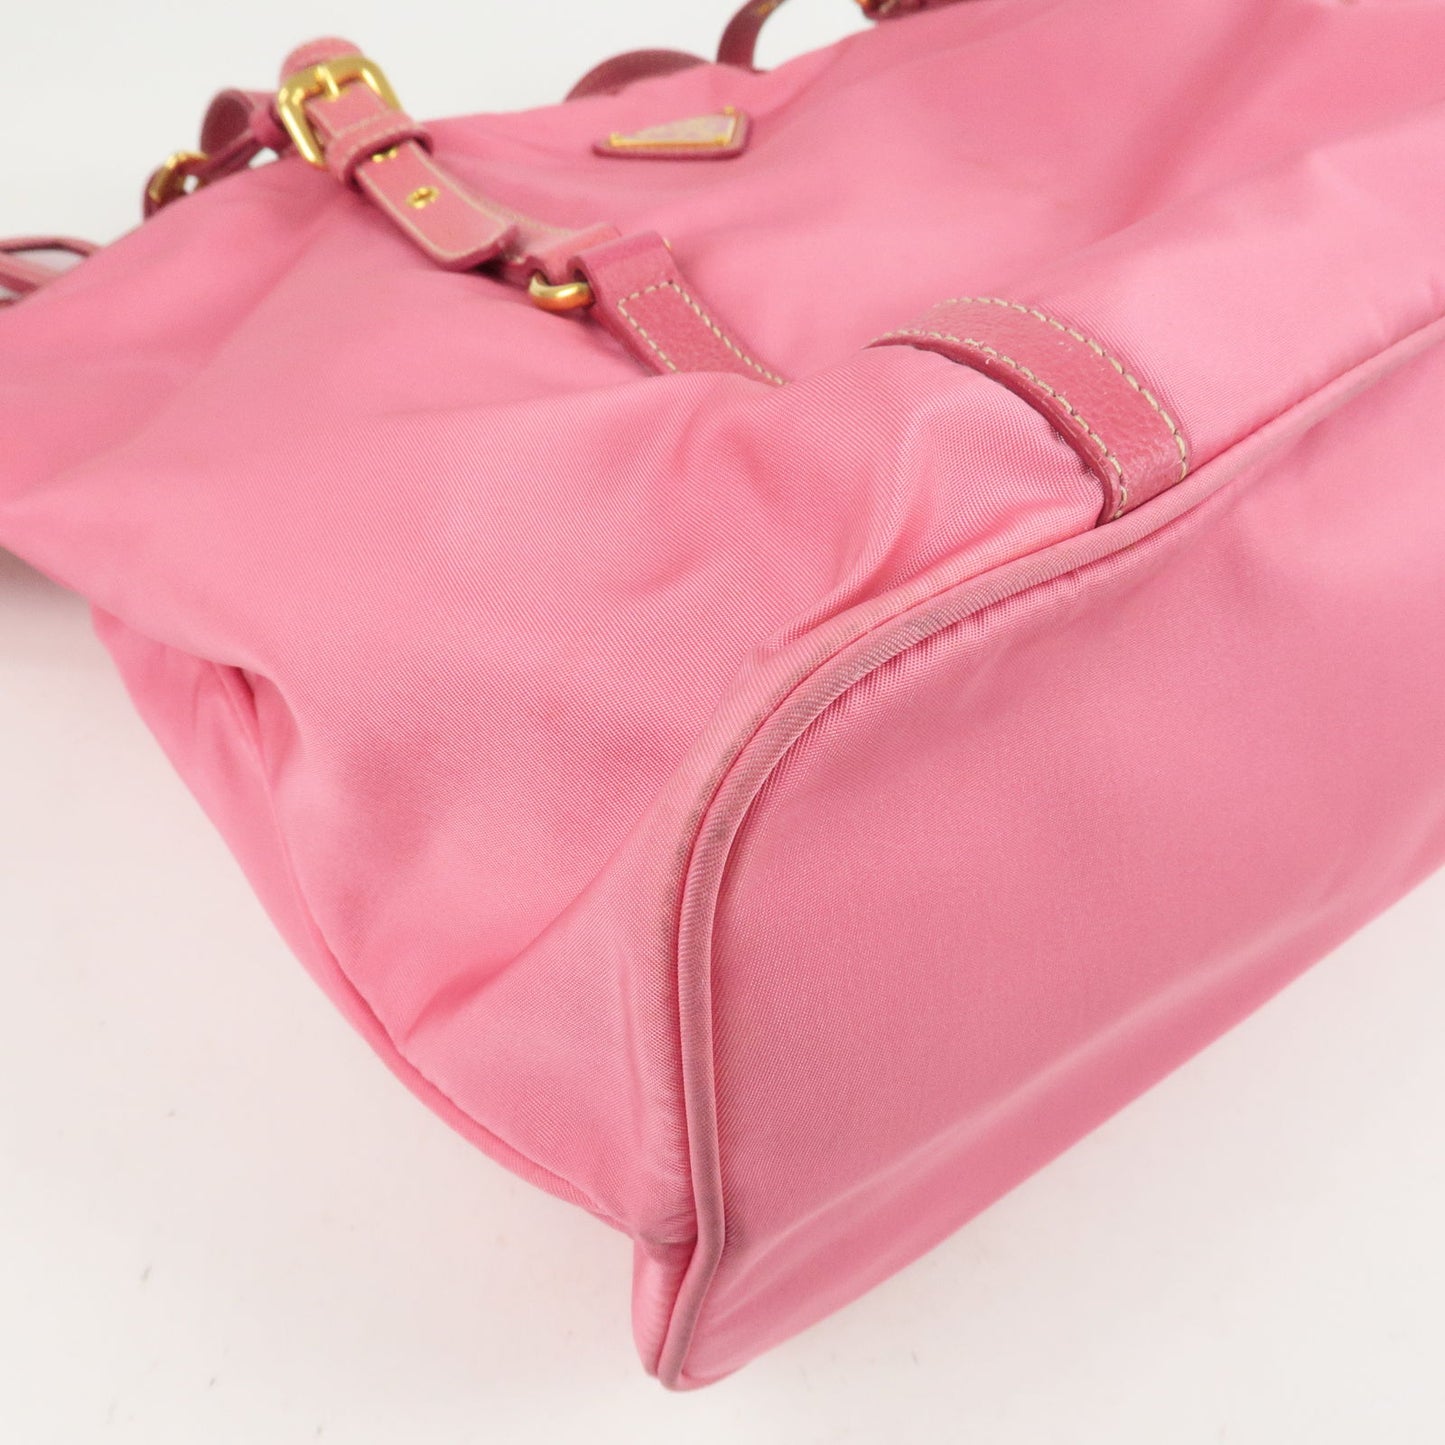 PRADA Logo Nylon Leather 2Way Bag Tote Bag Hand Bag Pink